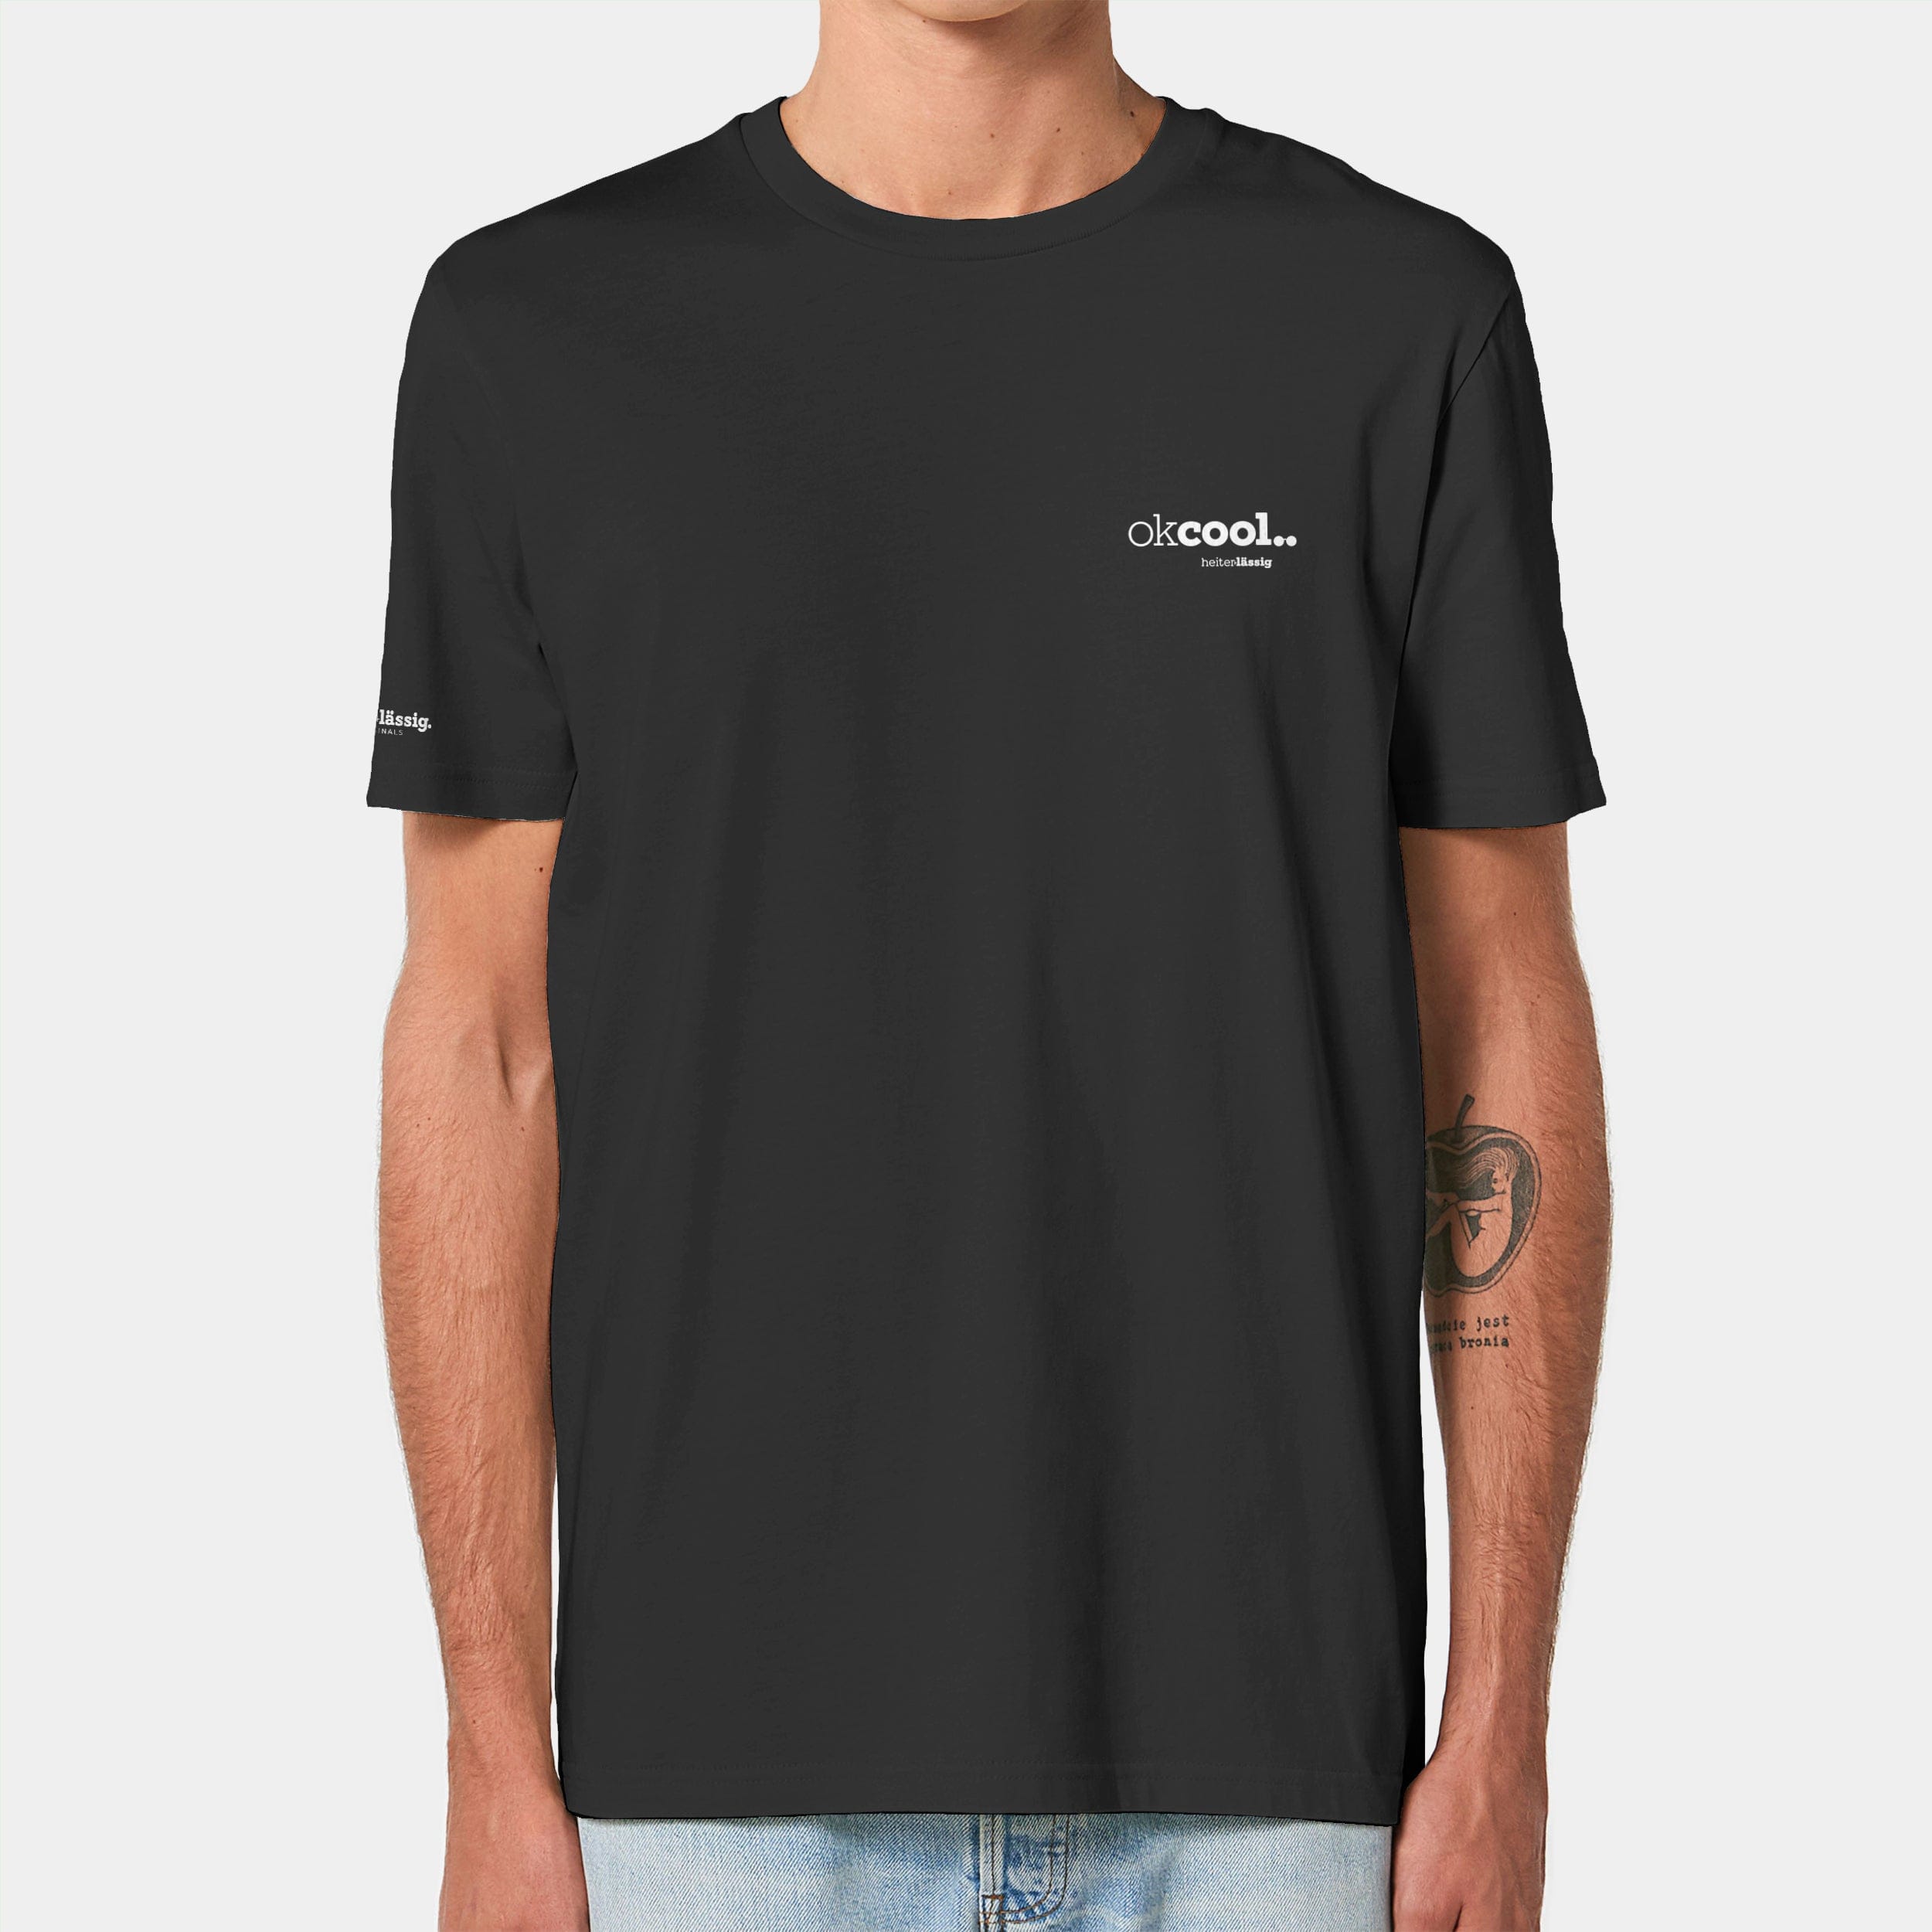 HEITER & LÄSSIG T-Shirt ORIGINAL "okcool" XXS / schwarz - aus nachhaltiger und fairer Produktion